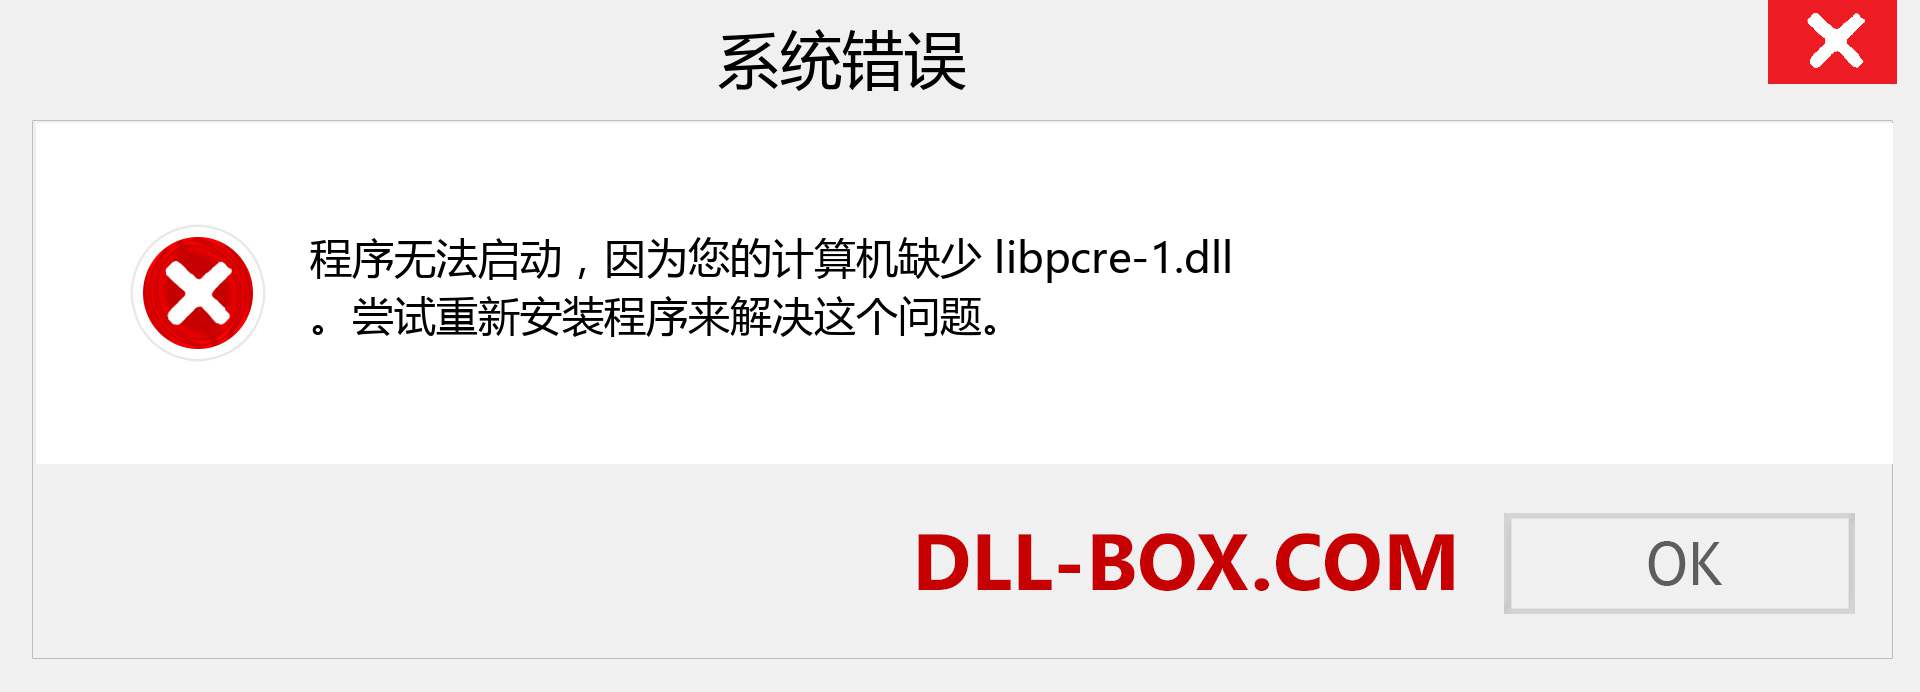 libpcre-1.dll 文件丢失？。 适用于 Windows 7、8、10 的下载 - 修复 Windows、照片、图像上的 libpcre-1 dll 丢失错误